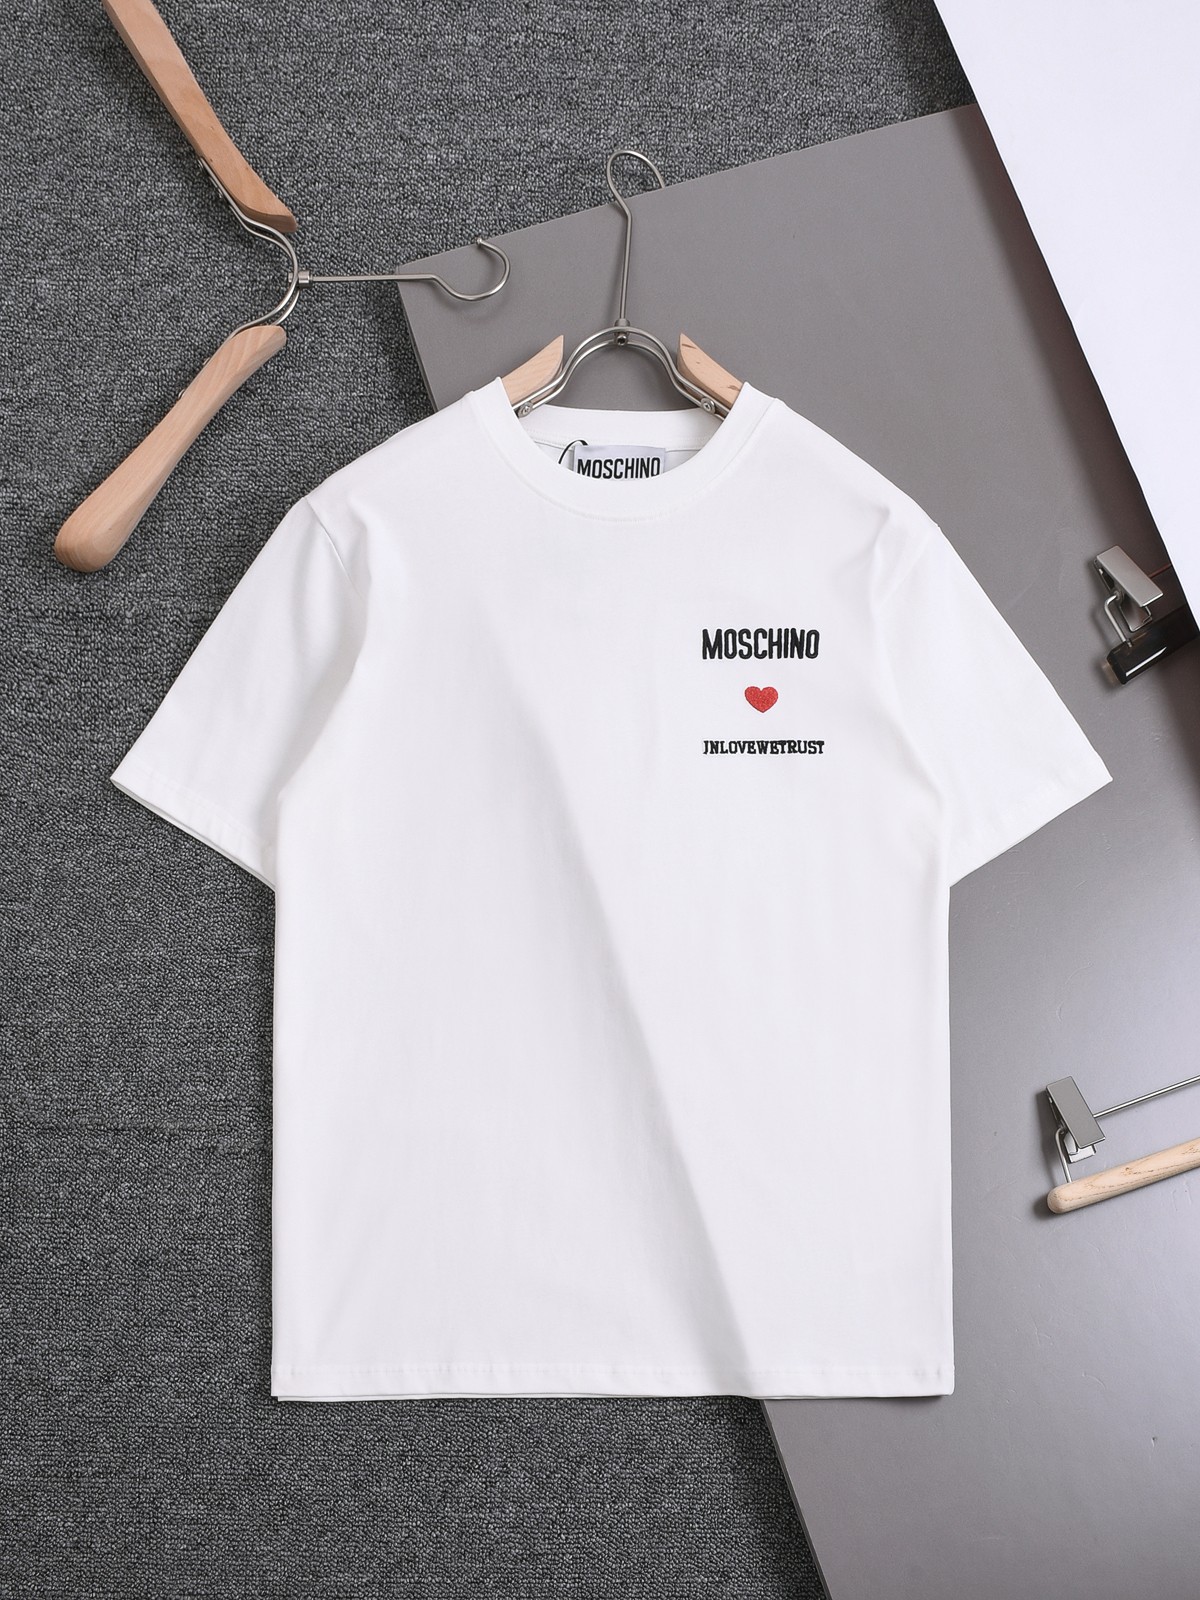 Moschino Vêtements T-Shirt Noir Blanc Broderie de fleurs Unisexe Coton Fashion